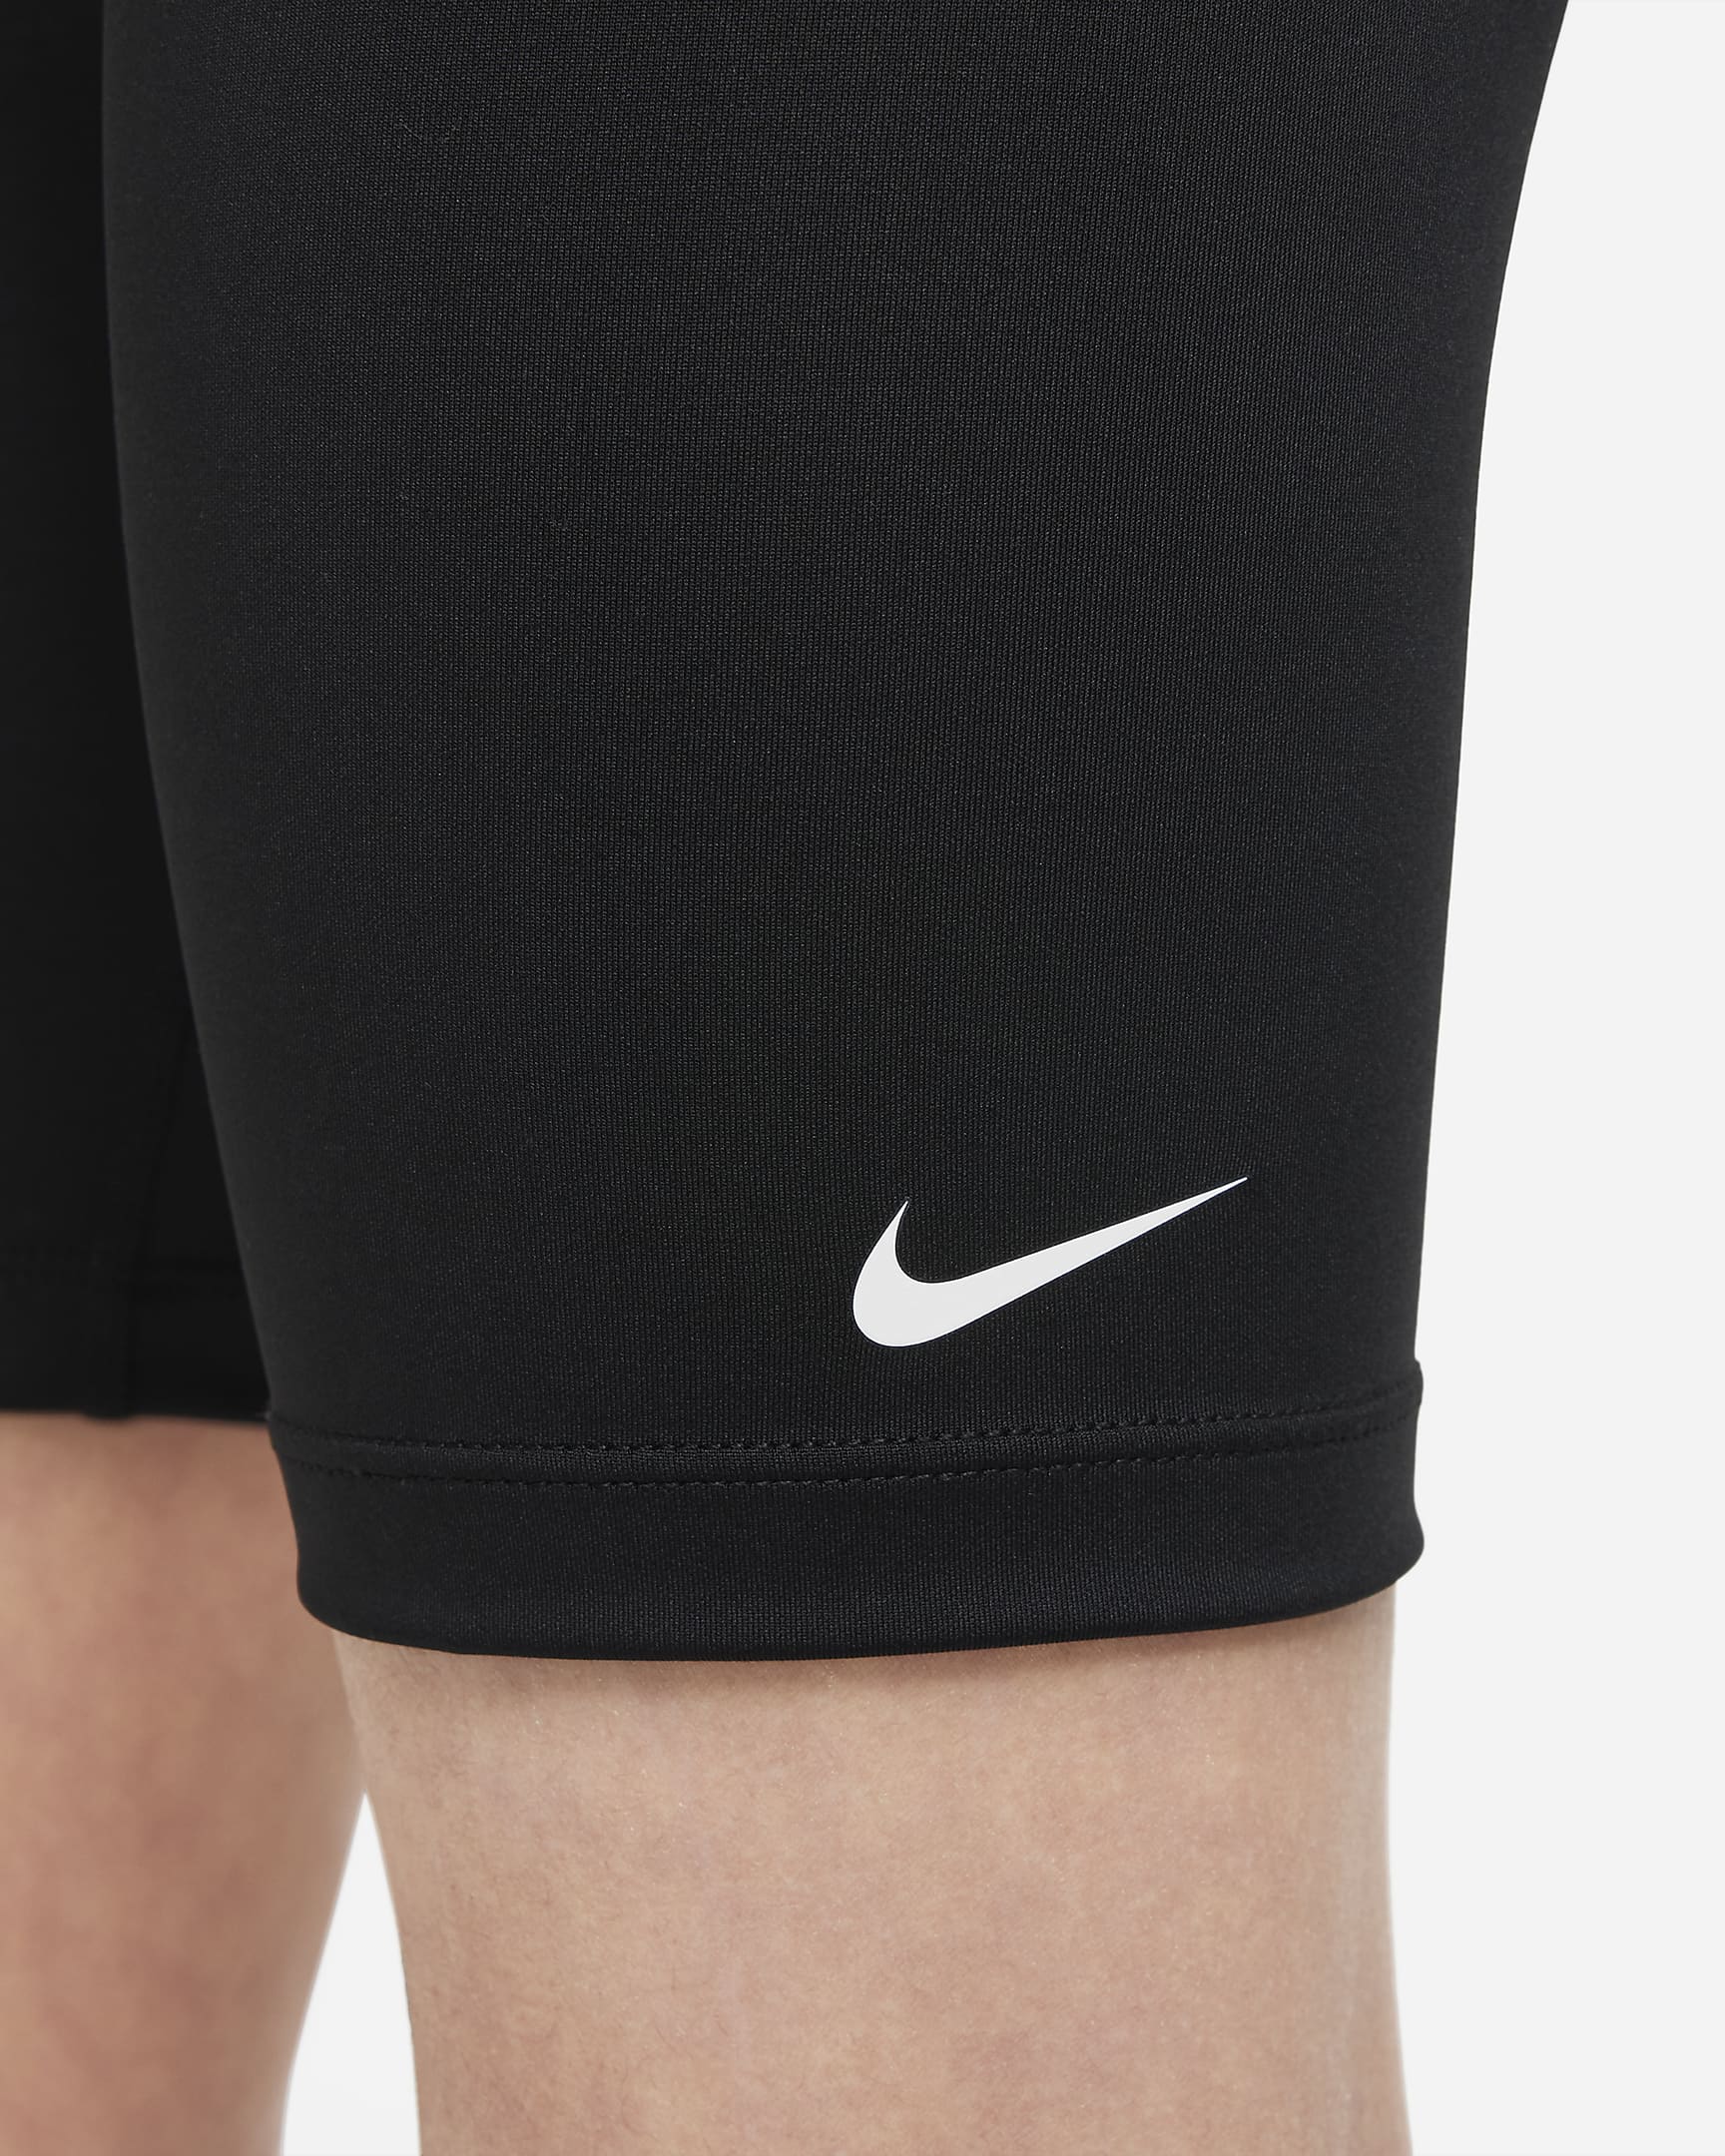 Nike One Bike Shorts (Mädchen) - Schwarz/Weiß